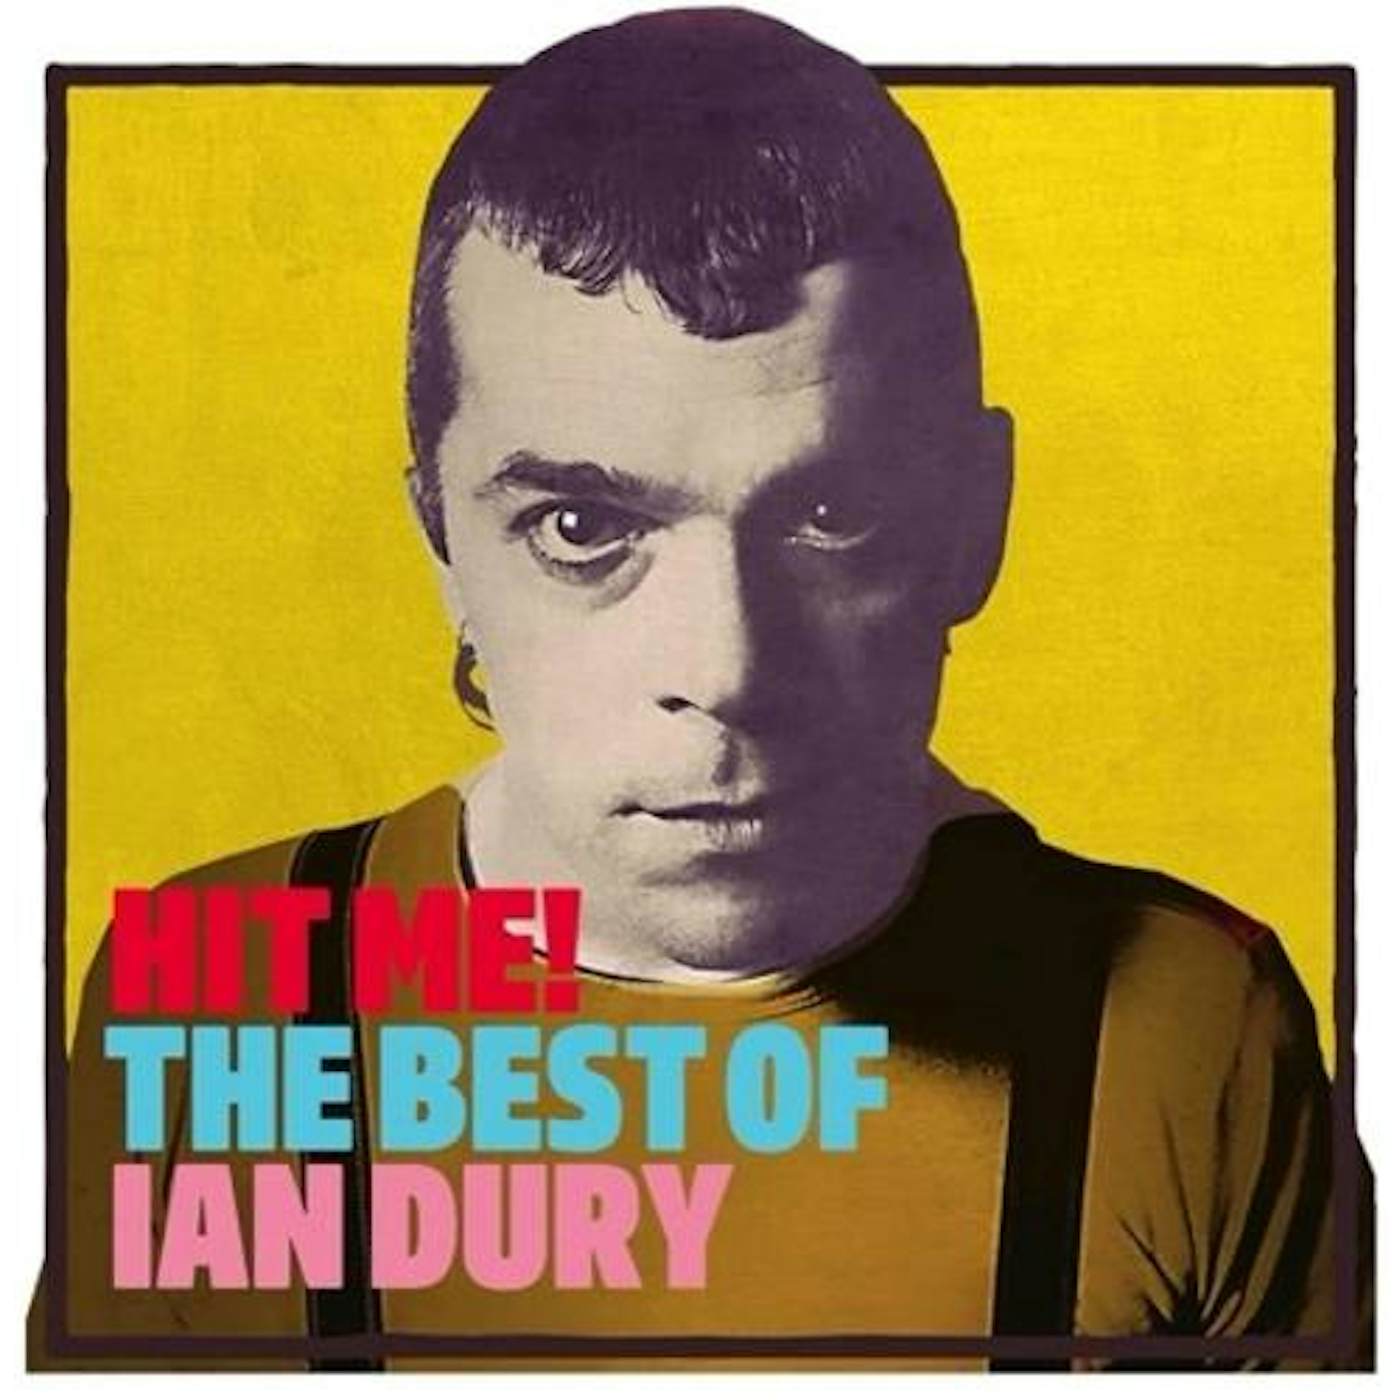 Ian Dury HIT ME: THE BEST OF Vinyl Record